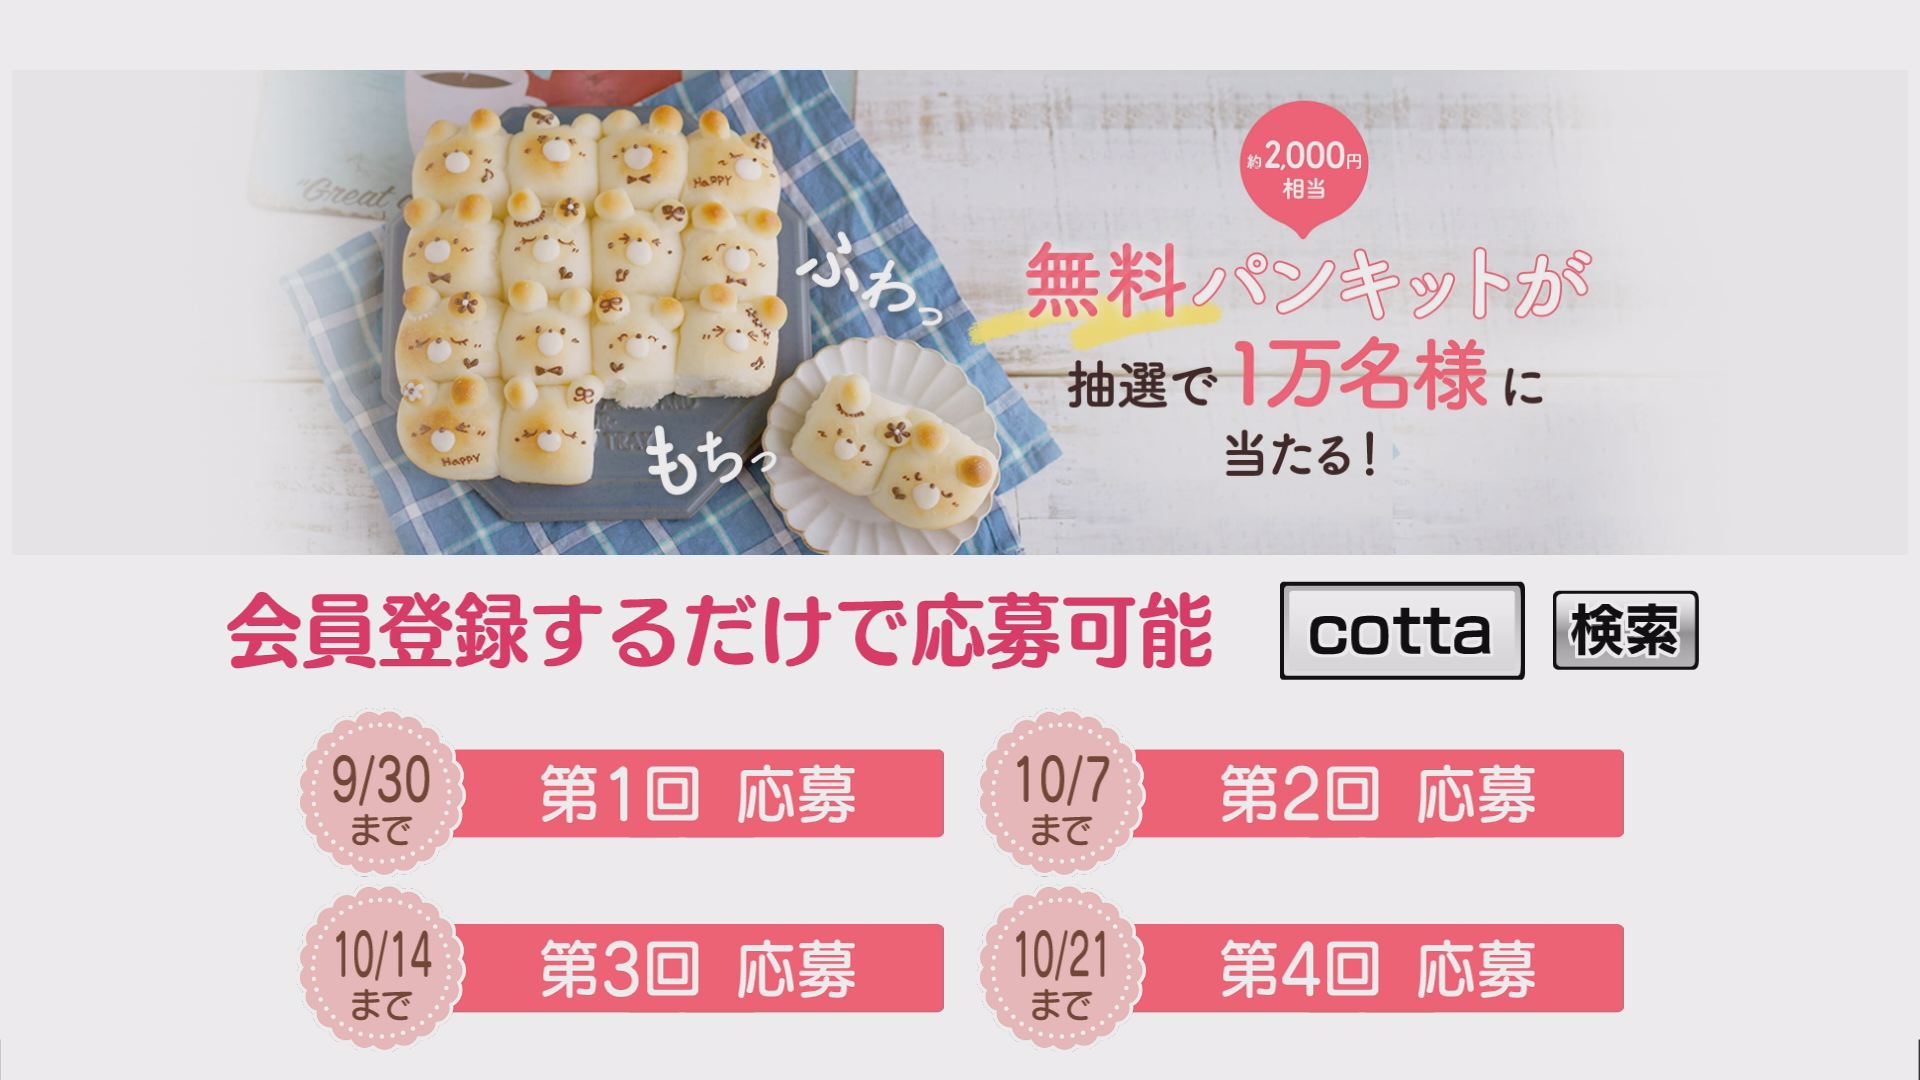 中島綾菜のおうち時間 ”cottaで簡単パン作り”